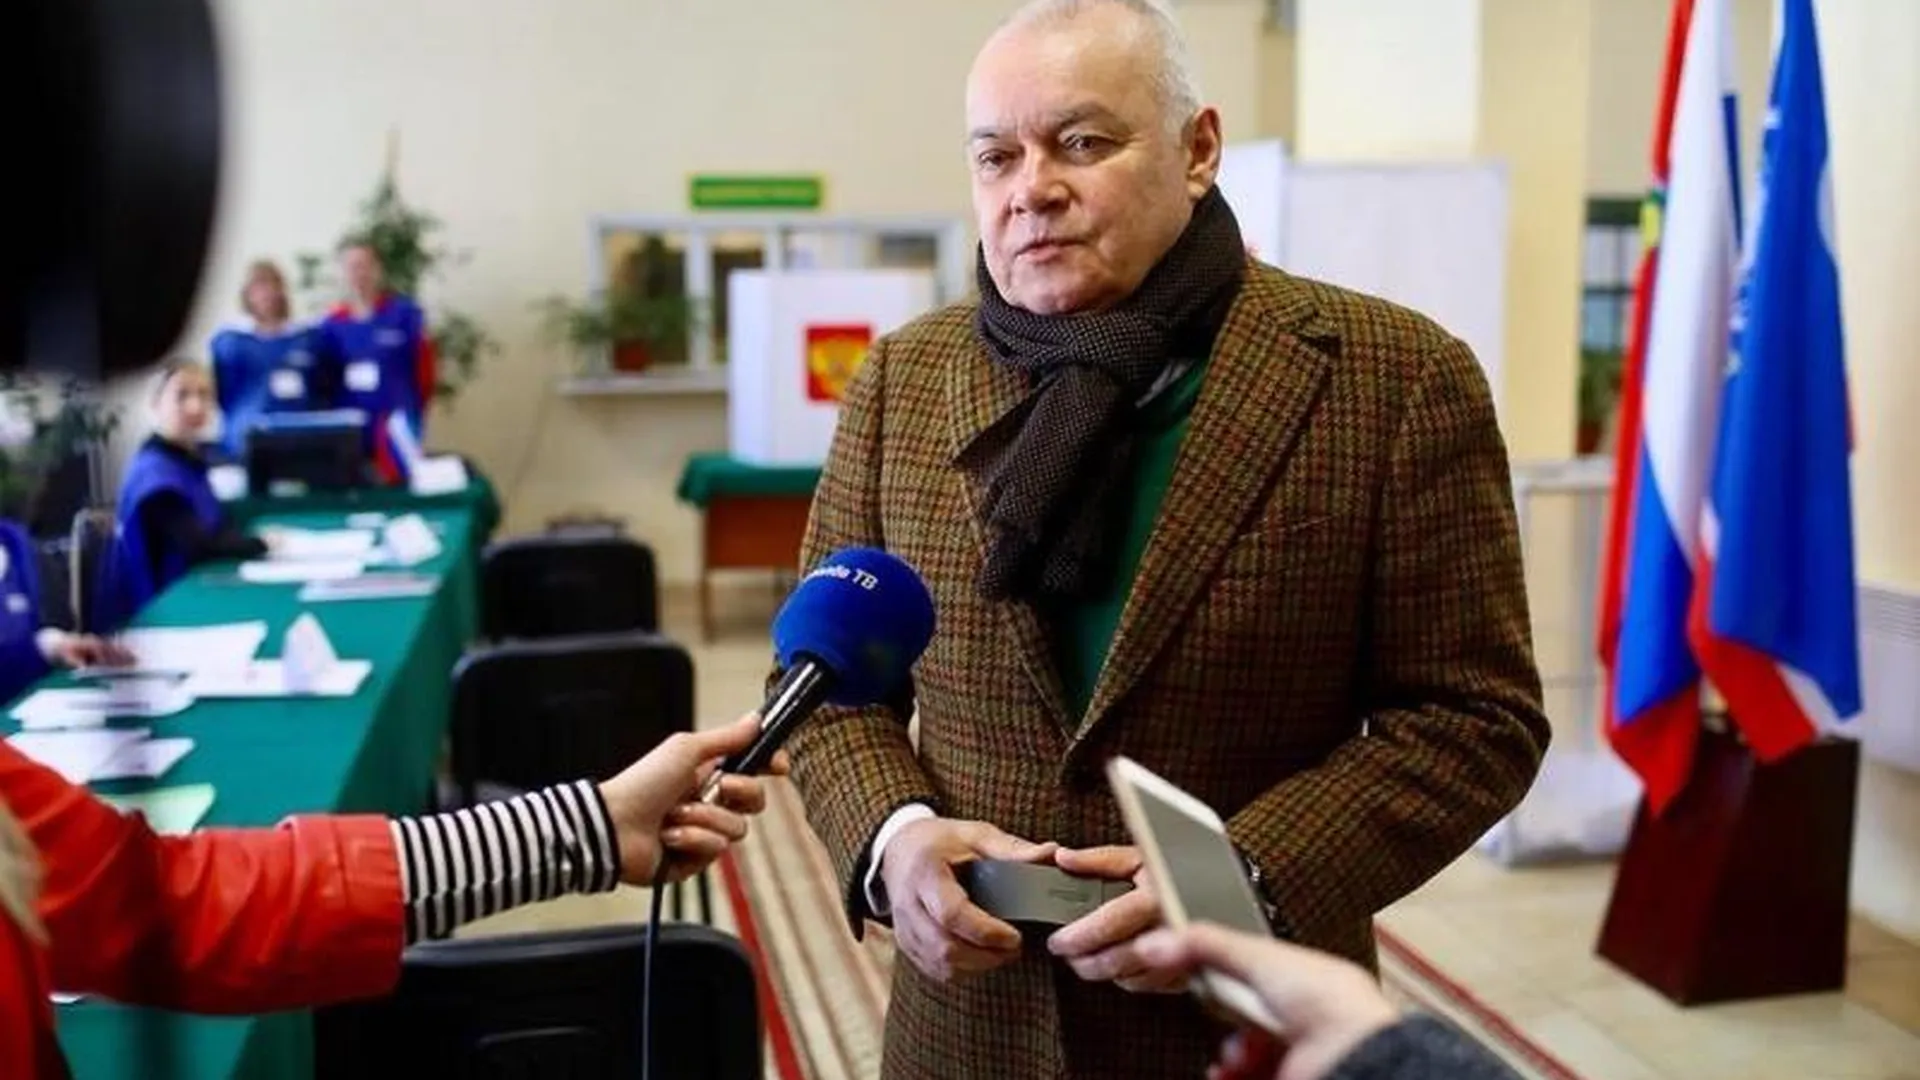 Дмитрий Киселев: я голосовал за надежность, за человеческую порядочность, за интеллект